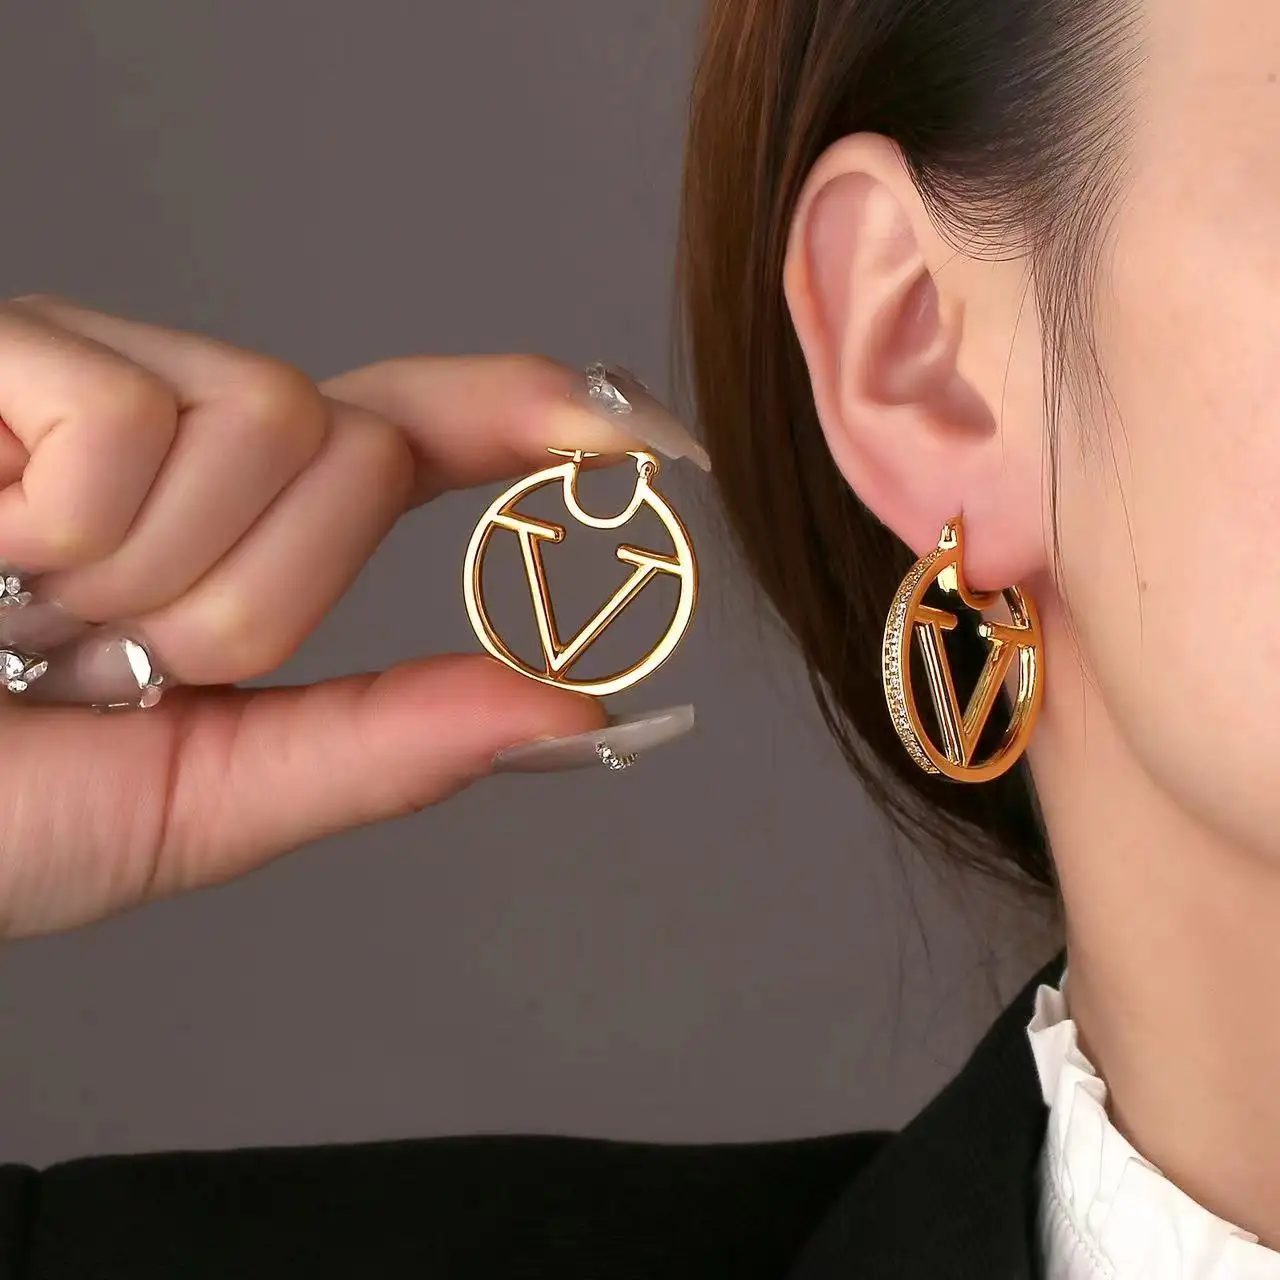 Nieuwe Luxe Mode Ontwerper Premium Stijl 18K Gouden Letter V Oorbellen Hoepel Kristallen Oorbellen Sieraden Voor Vrouwen